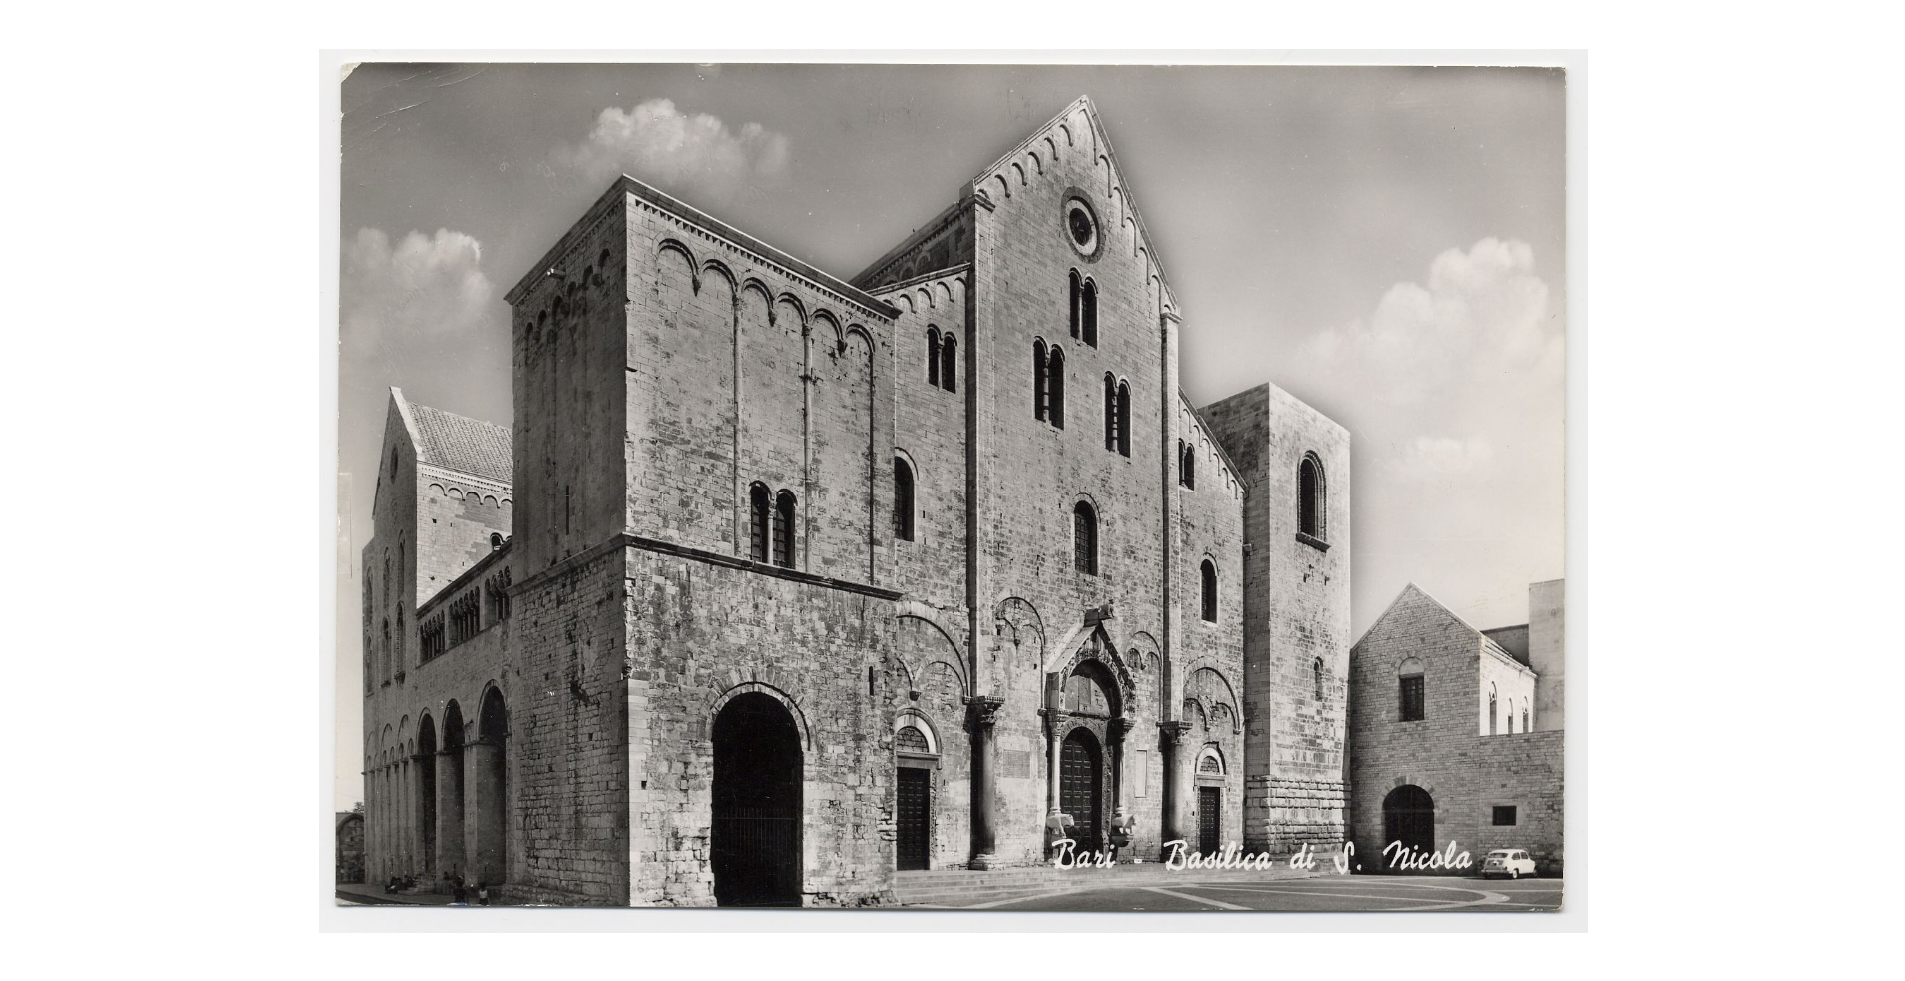 Fotografo non identificato, Bari - Basilica di S. Nicola, 1967, cartolina, FFC017440